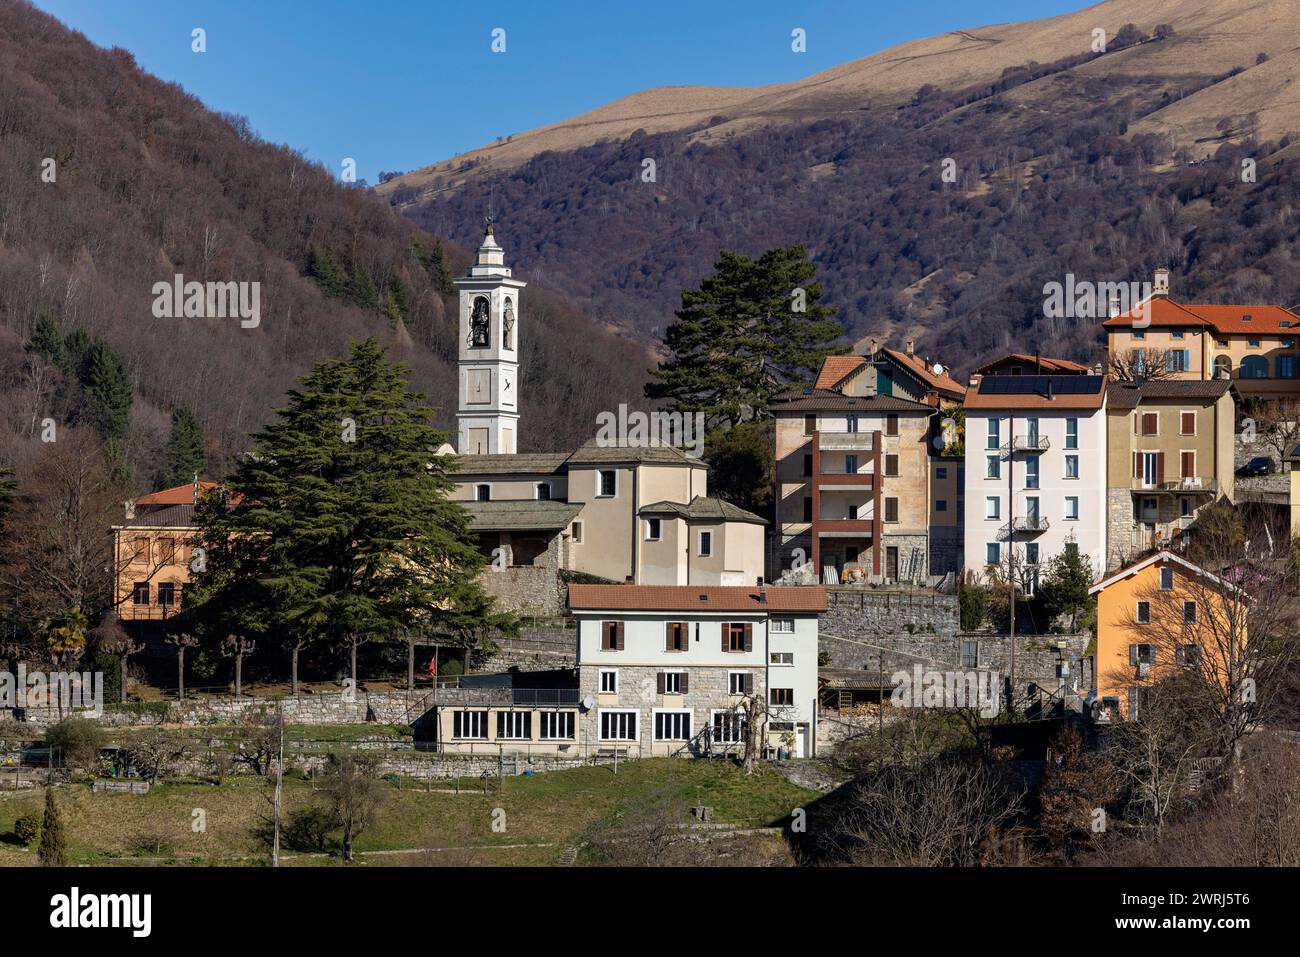 Village view of Bruzella, Valle di Muggio, Breggia, Ticino, Switzerland Stock Photo